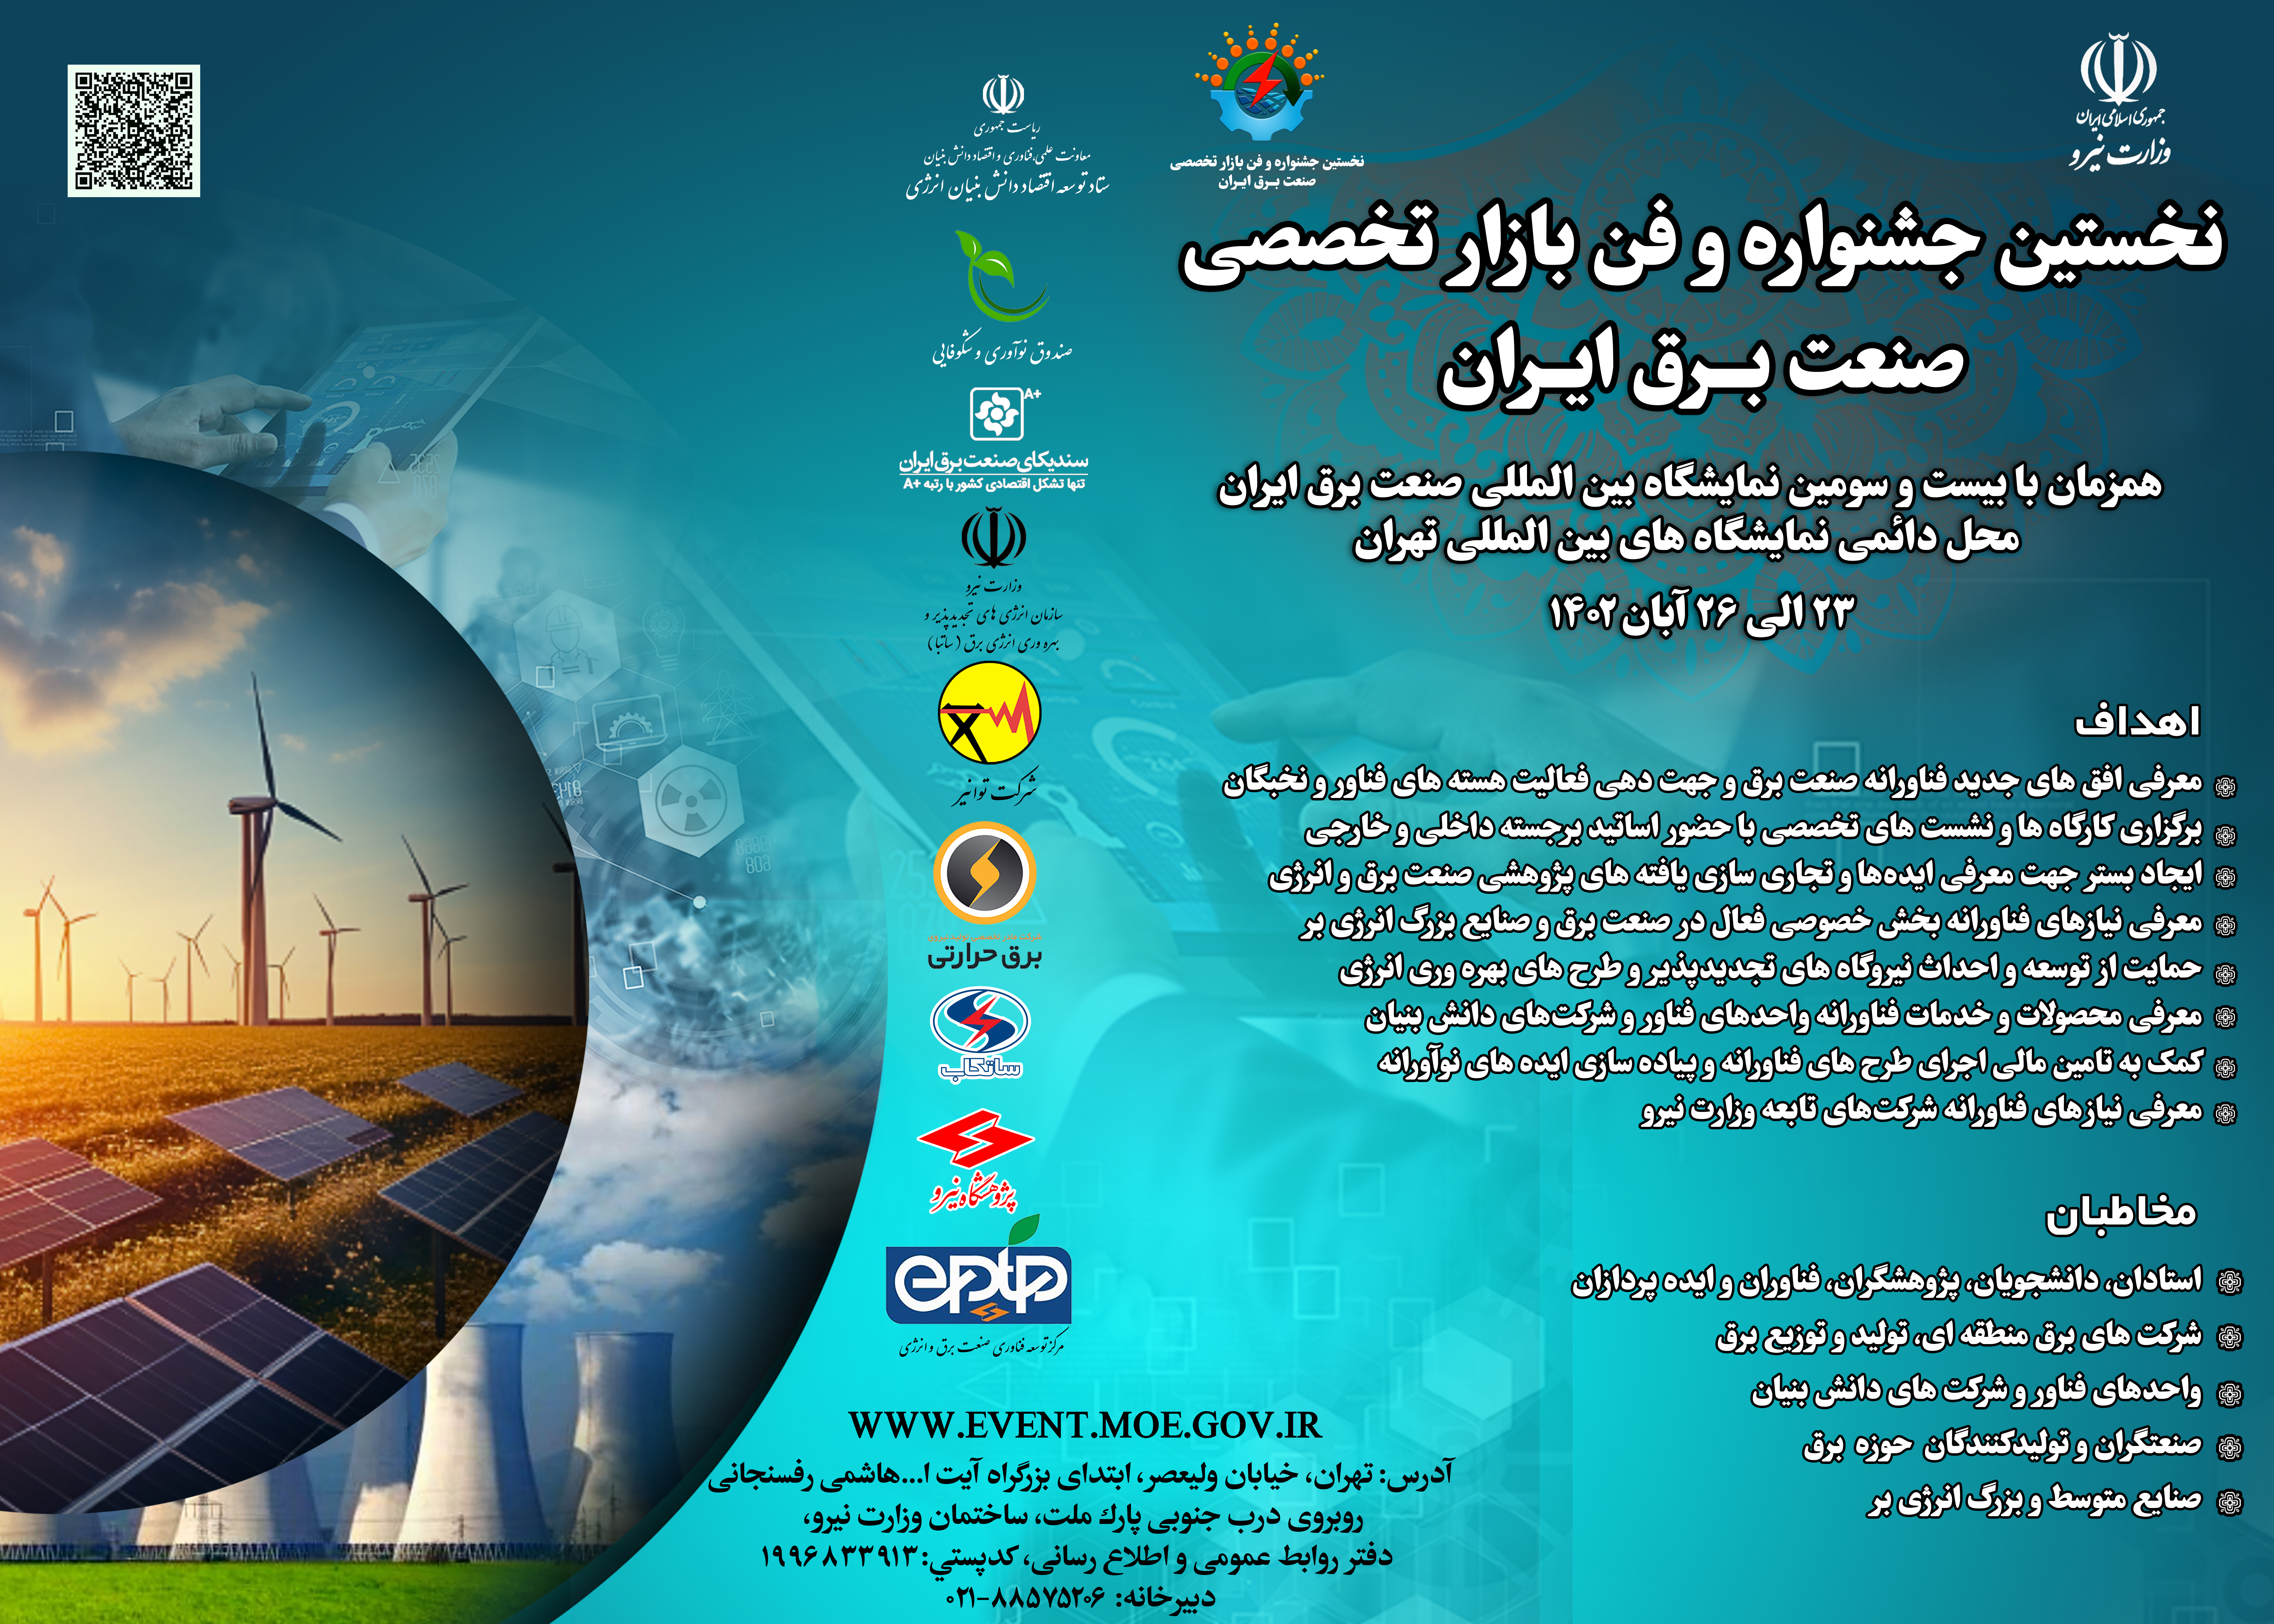  موشن پوستر نخستین جشنواره و فن بازار صنعت برق ایران